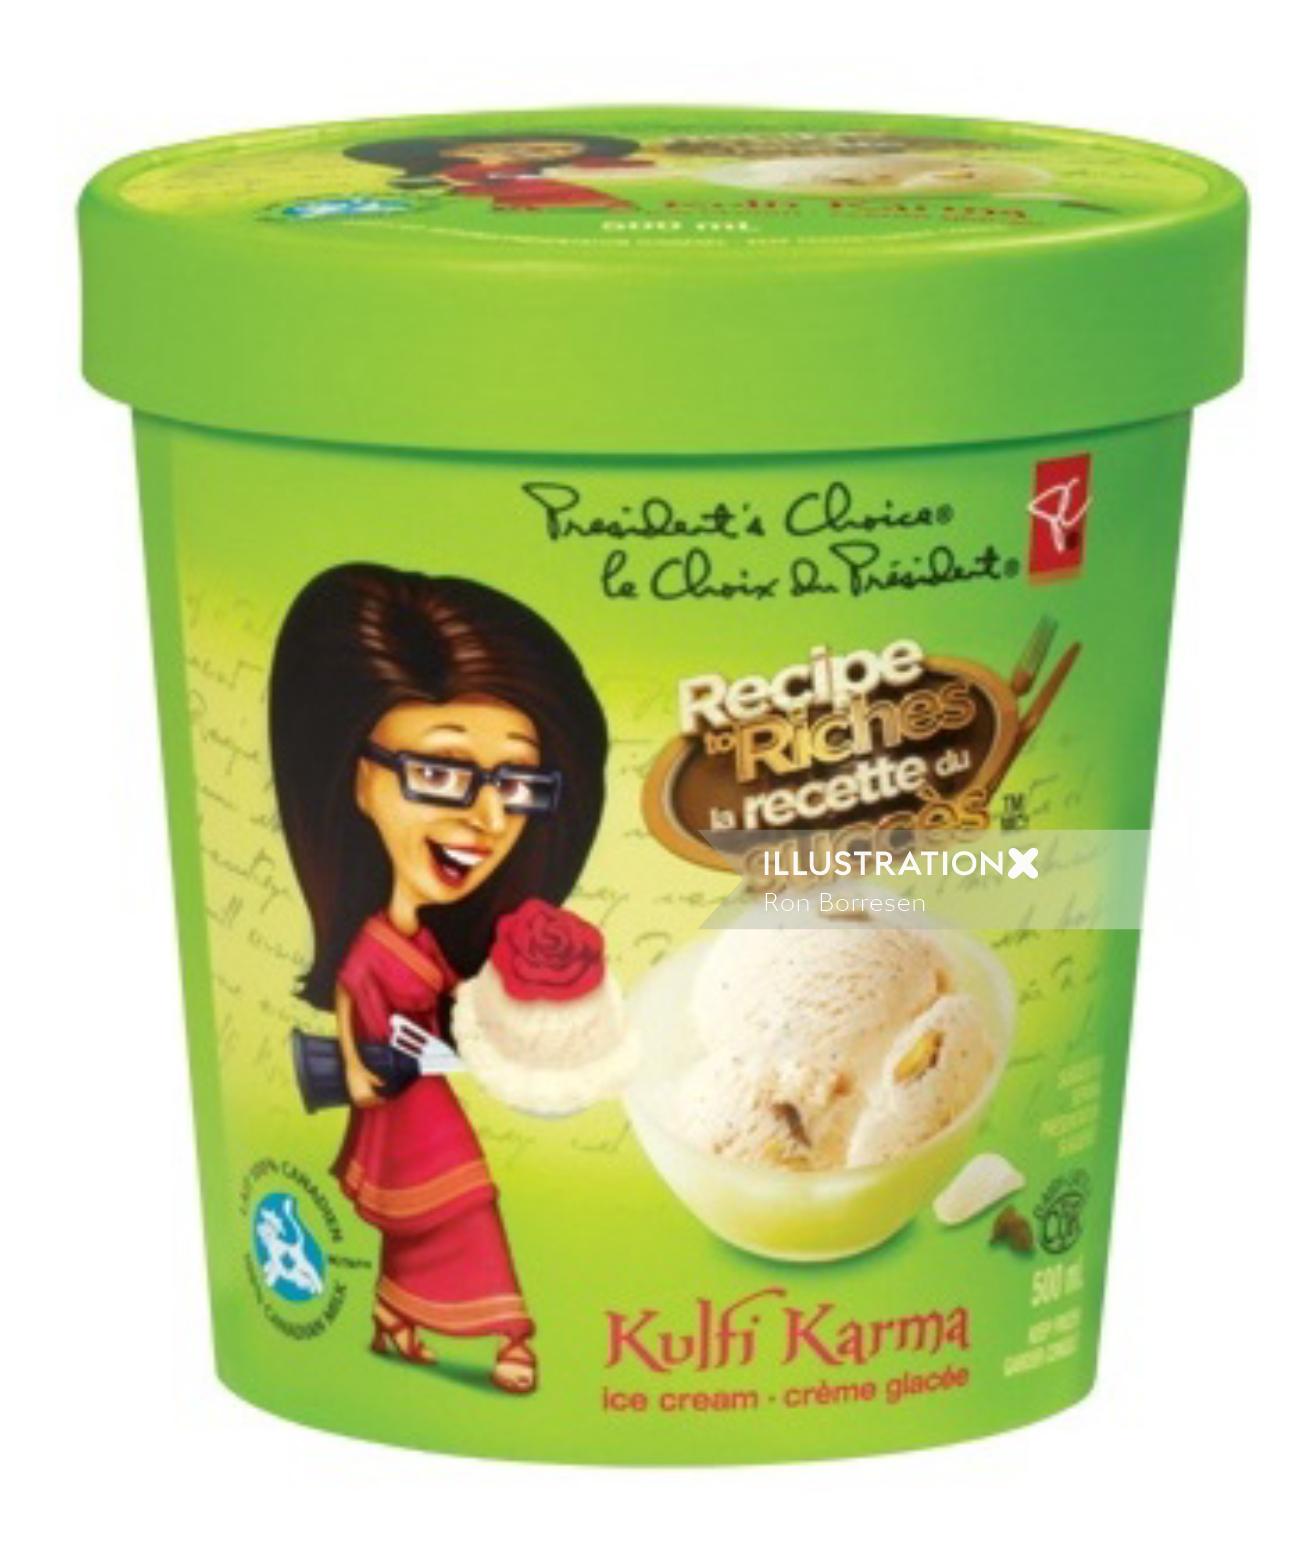 Receita para Riquezas - Embalagem de sorvete Kulfi karma